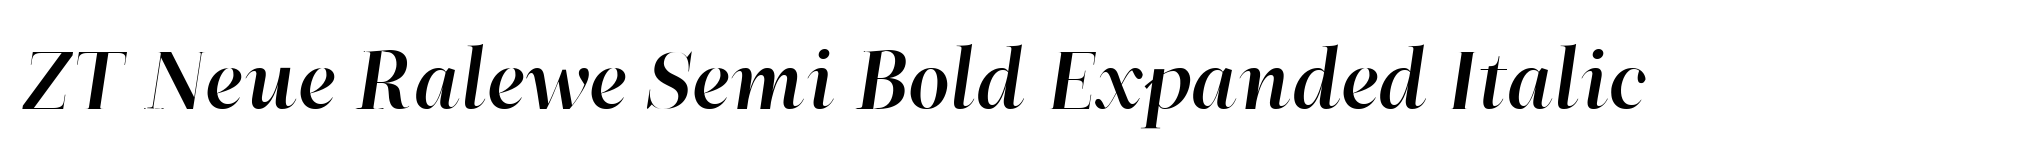 ZT Neue Ralewe Semi Bold Expanded Italic image